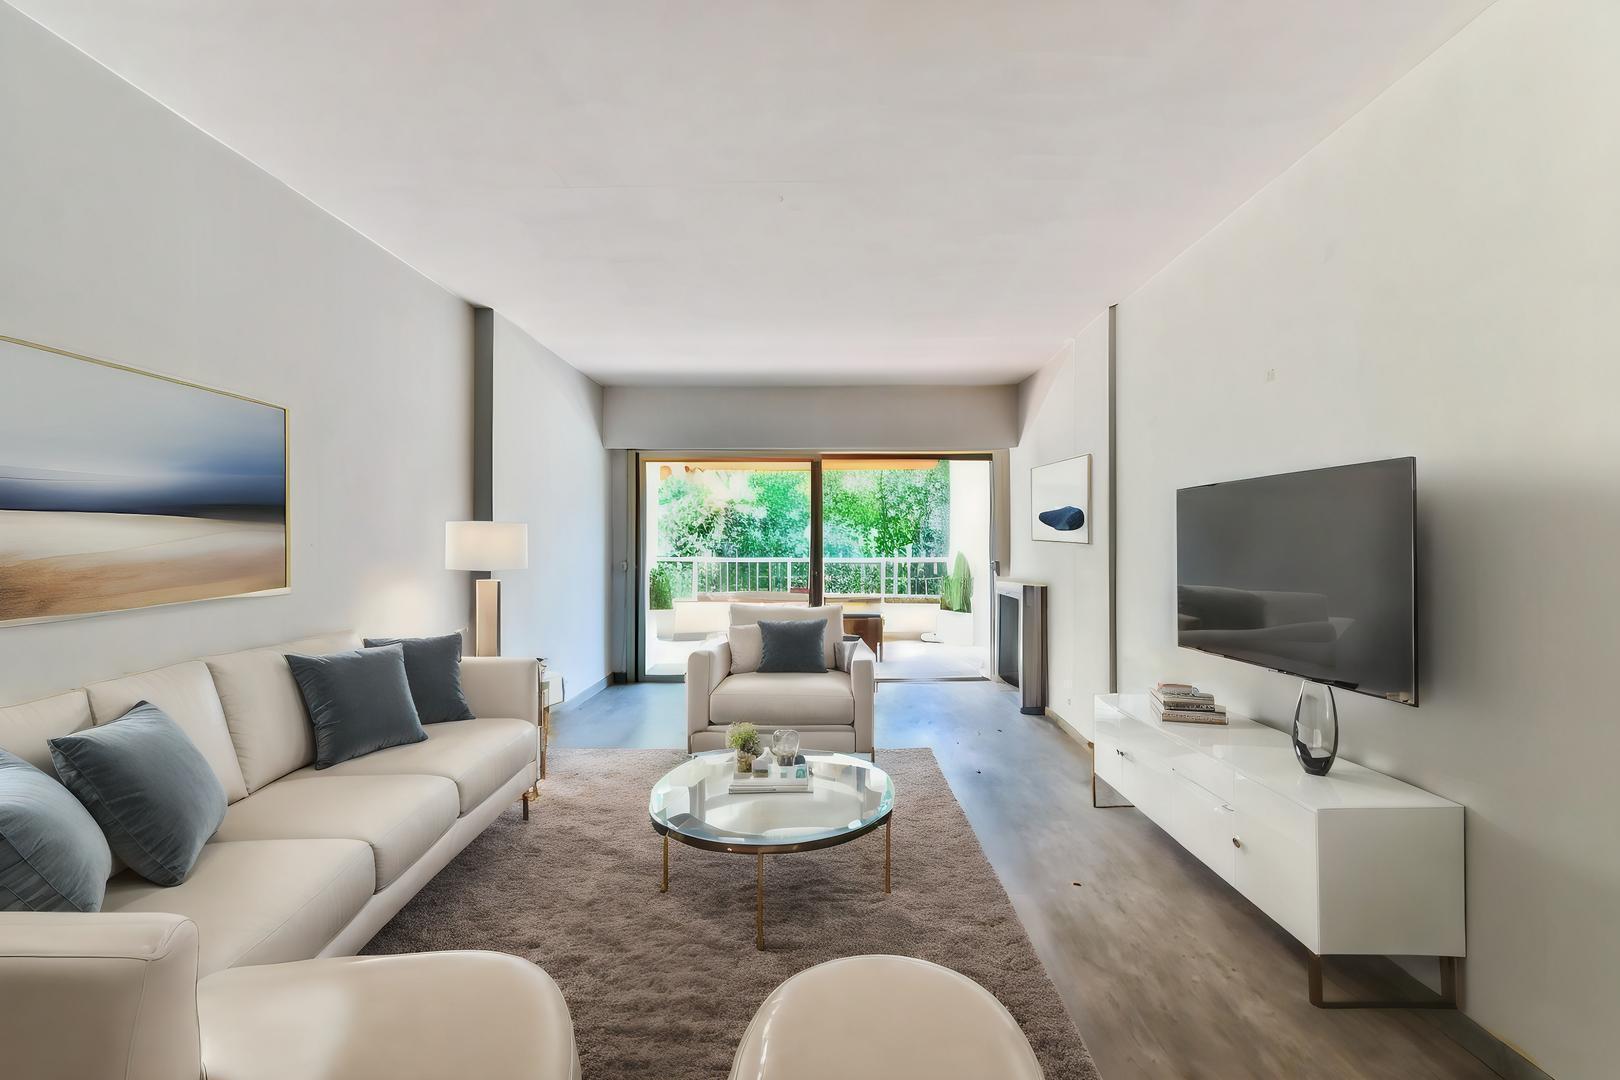 Homki - Vente Appartement  de 77.0 m² à Cannes 06400